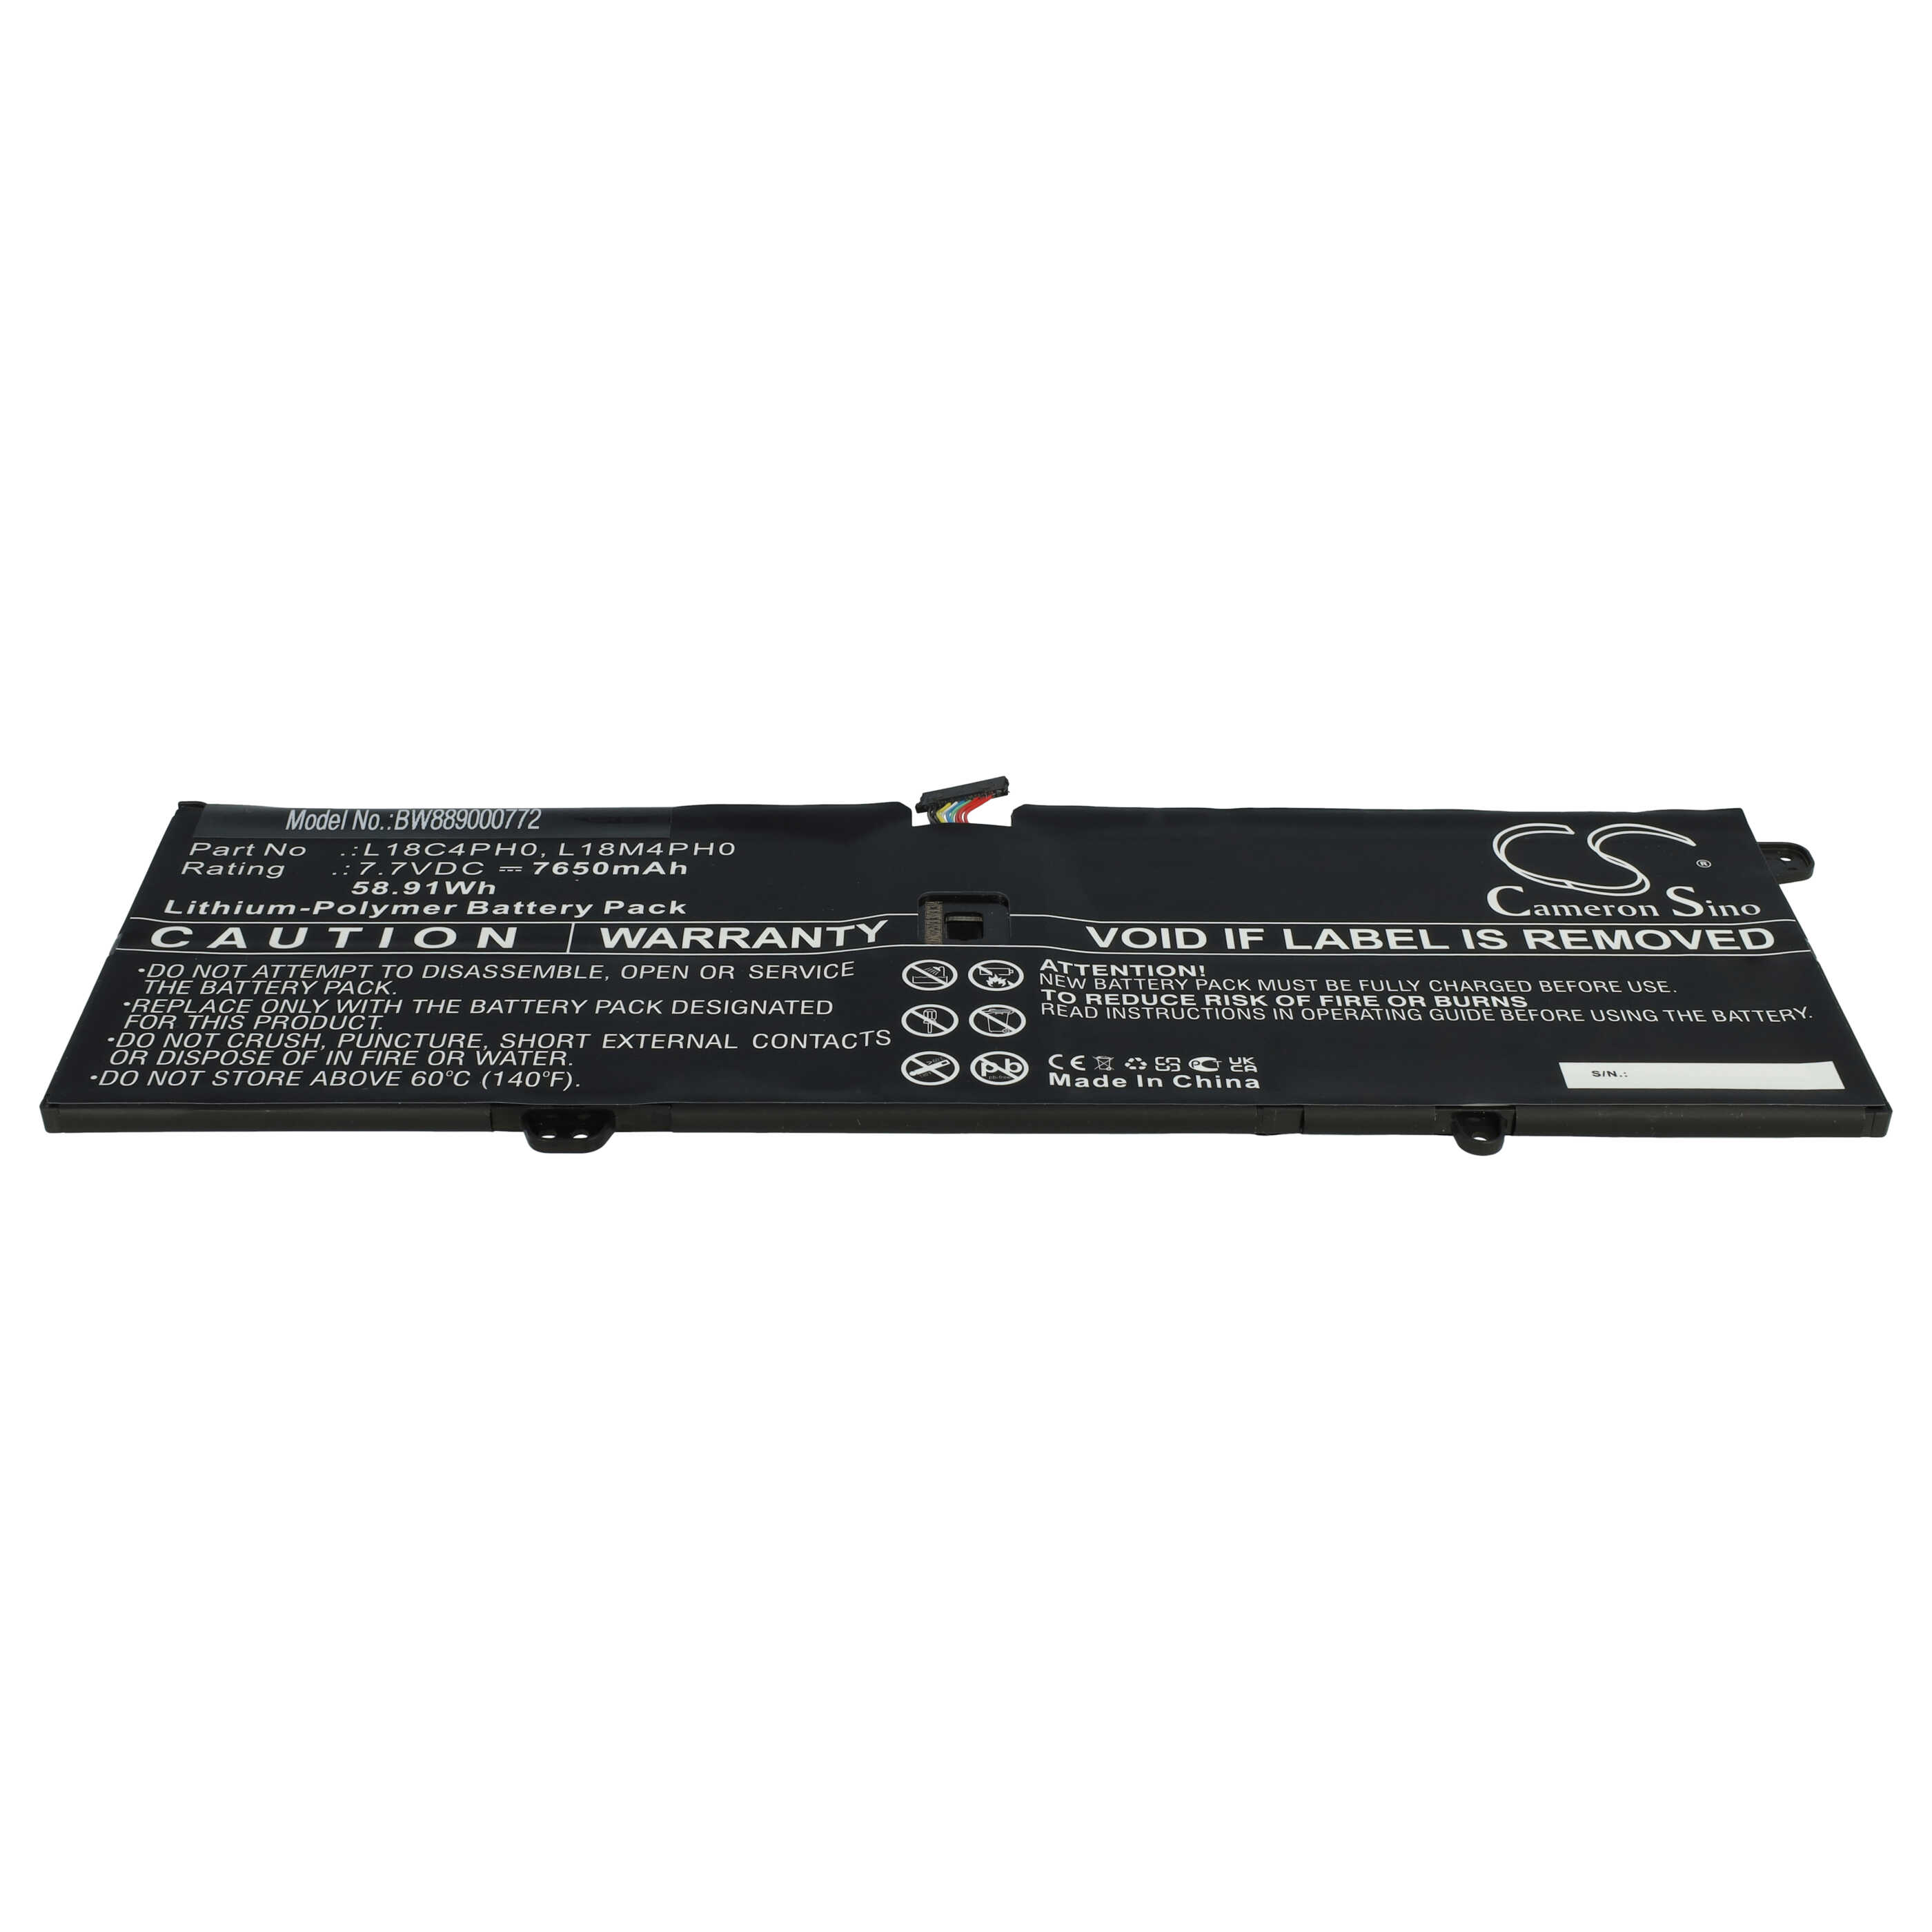 Akumulator do laptopa zamiennik Lenovo 5B10T11585, 5B10T11586, 5B10T11686, 5B10W67180 - 7650 mAh 7,7 V LiPo